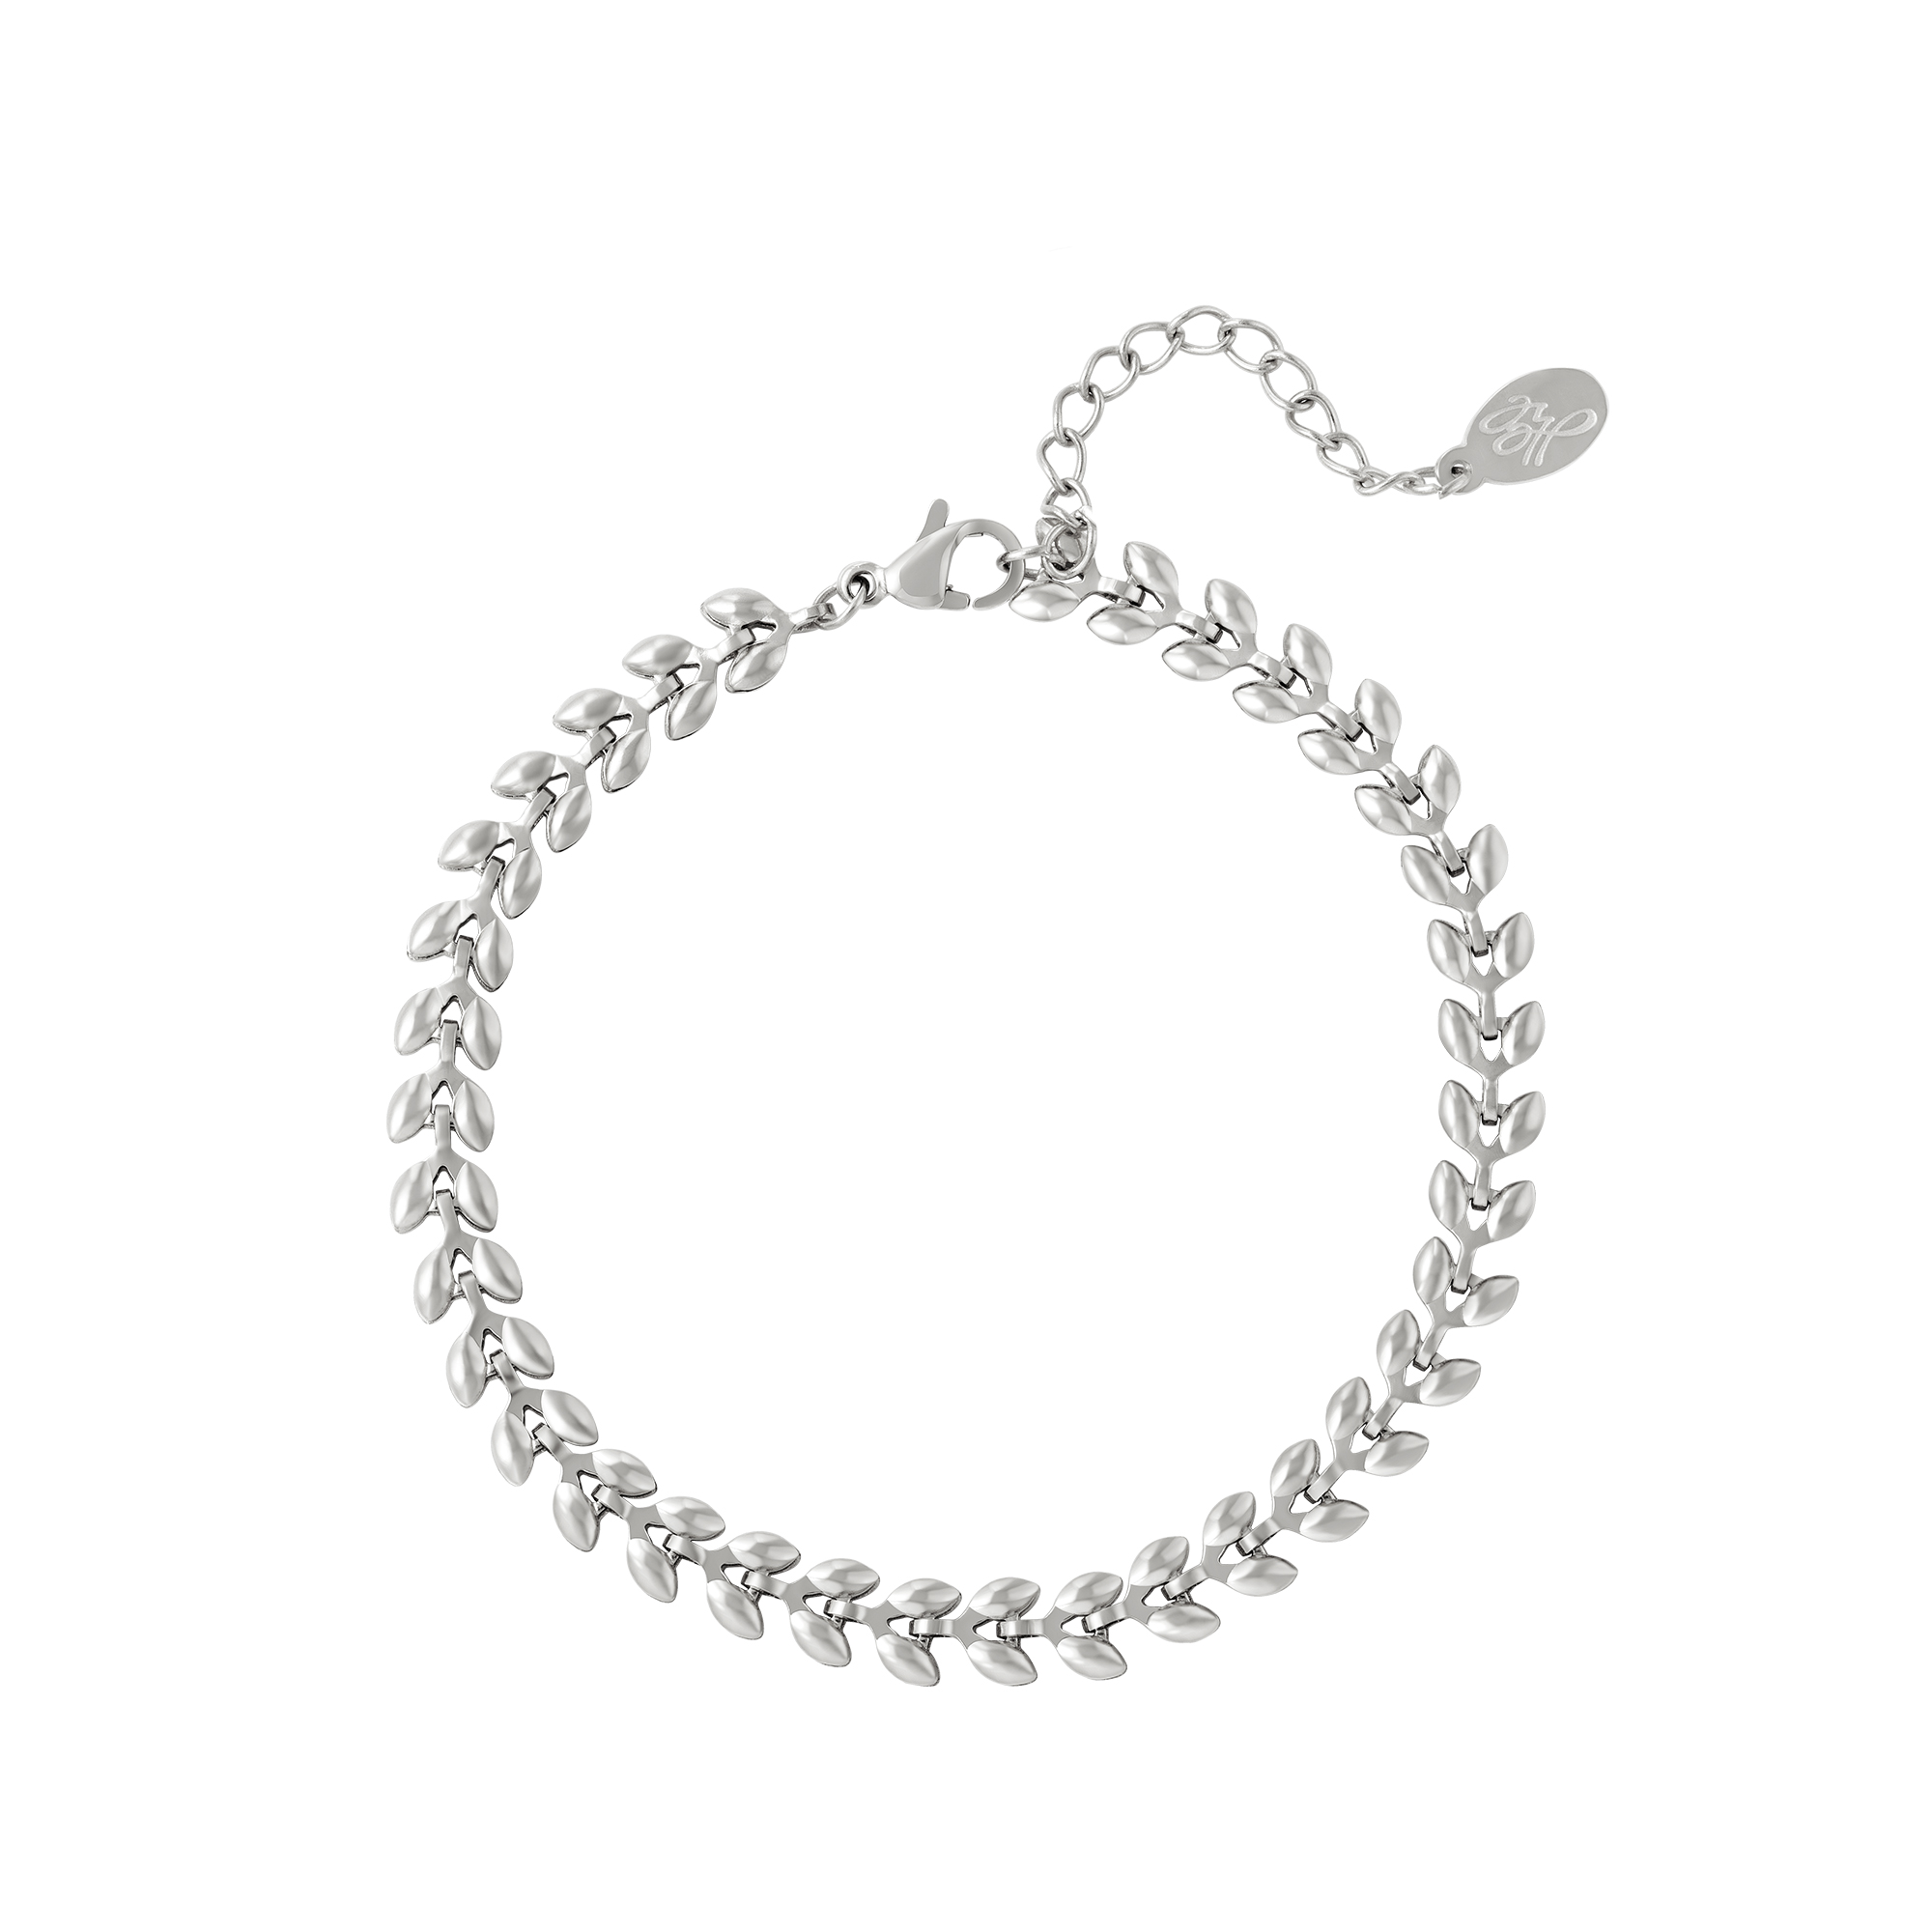 Armband Blaadjes zilver zilveren korte dames armbanden bracelets met blaadjes patroon rvs roest vrij staal yehwang sieraden accessoires kopen bestellen